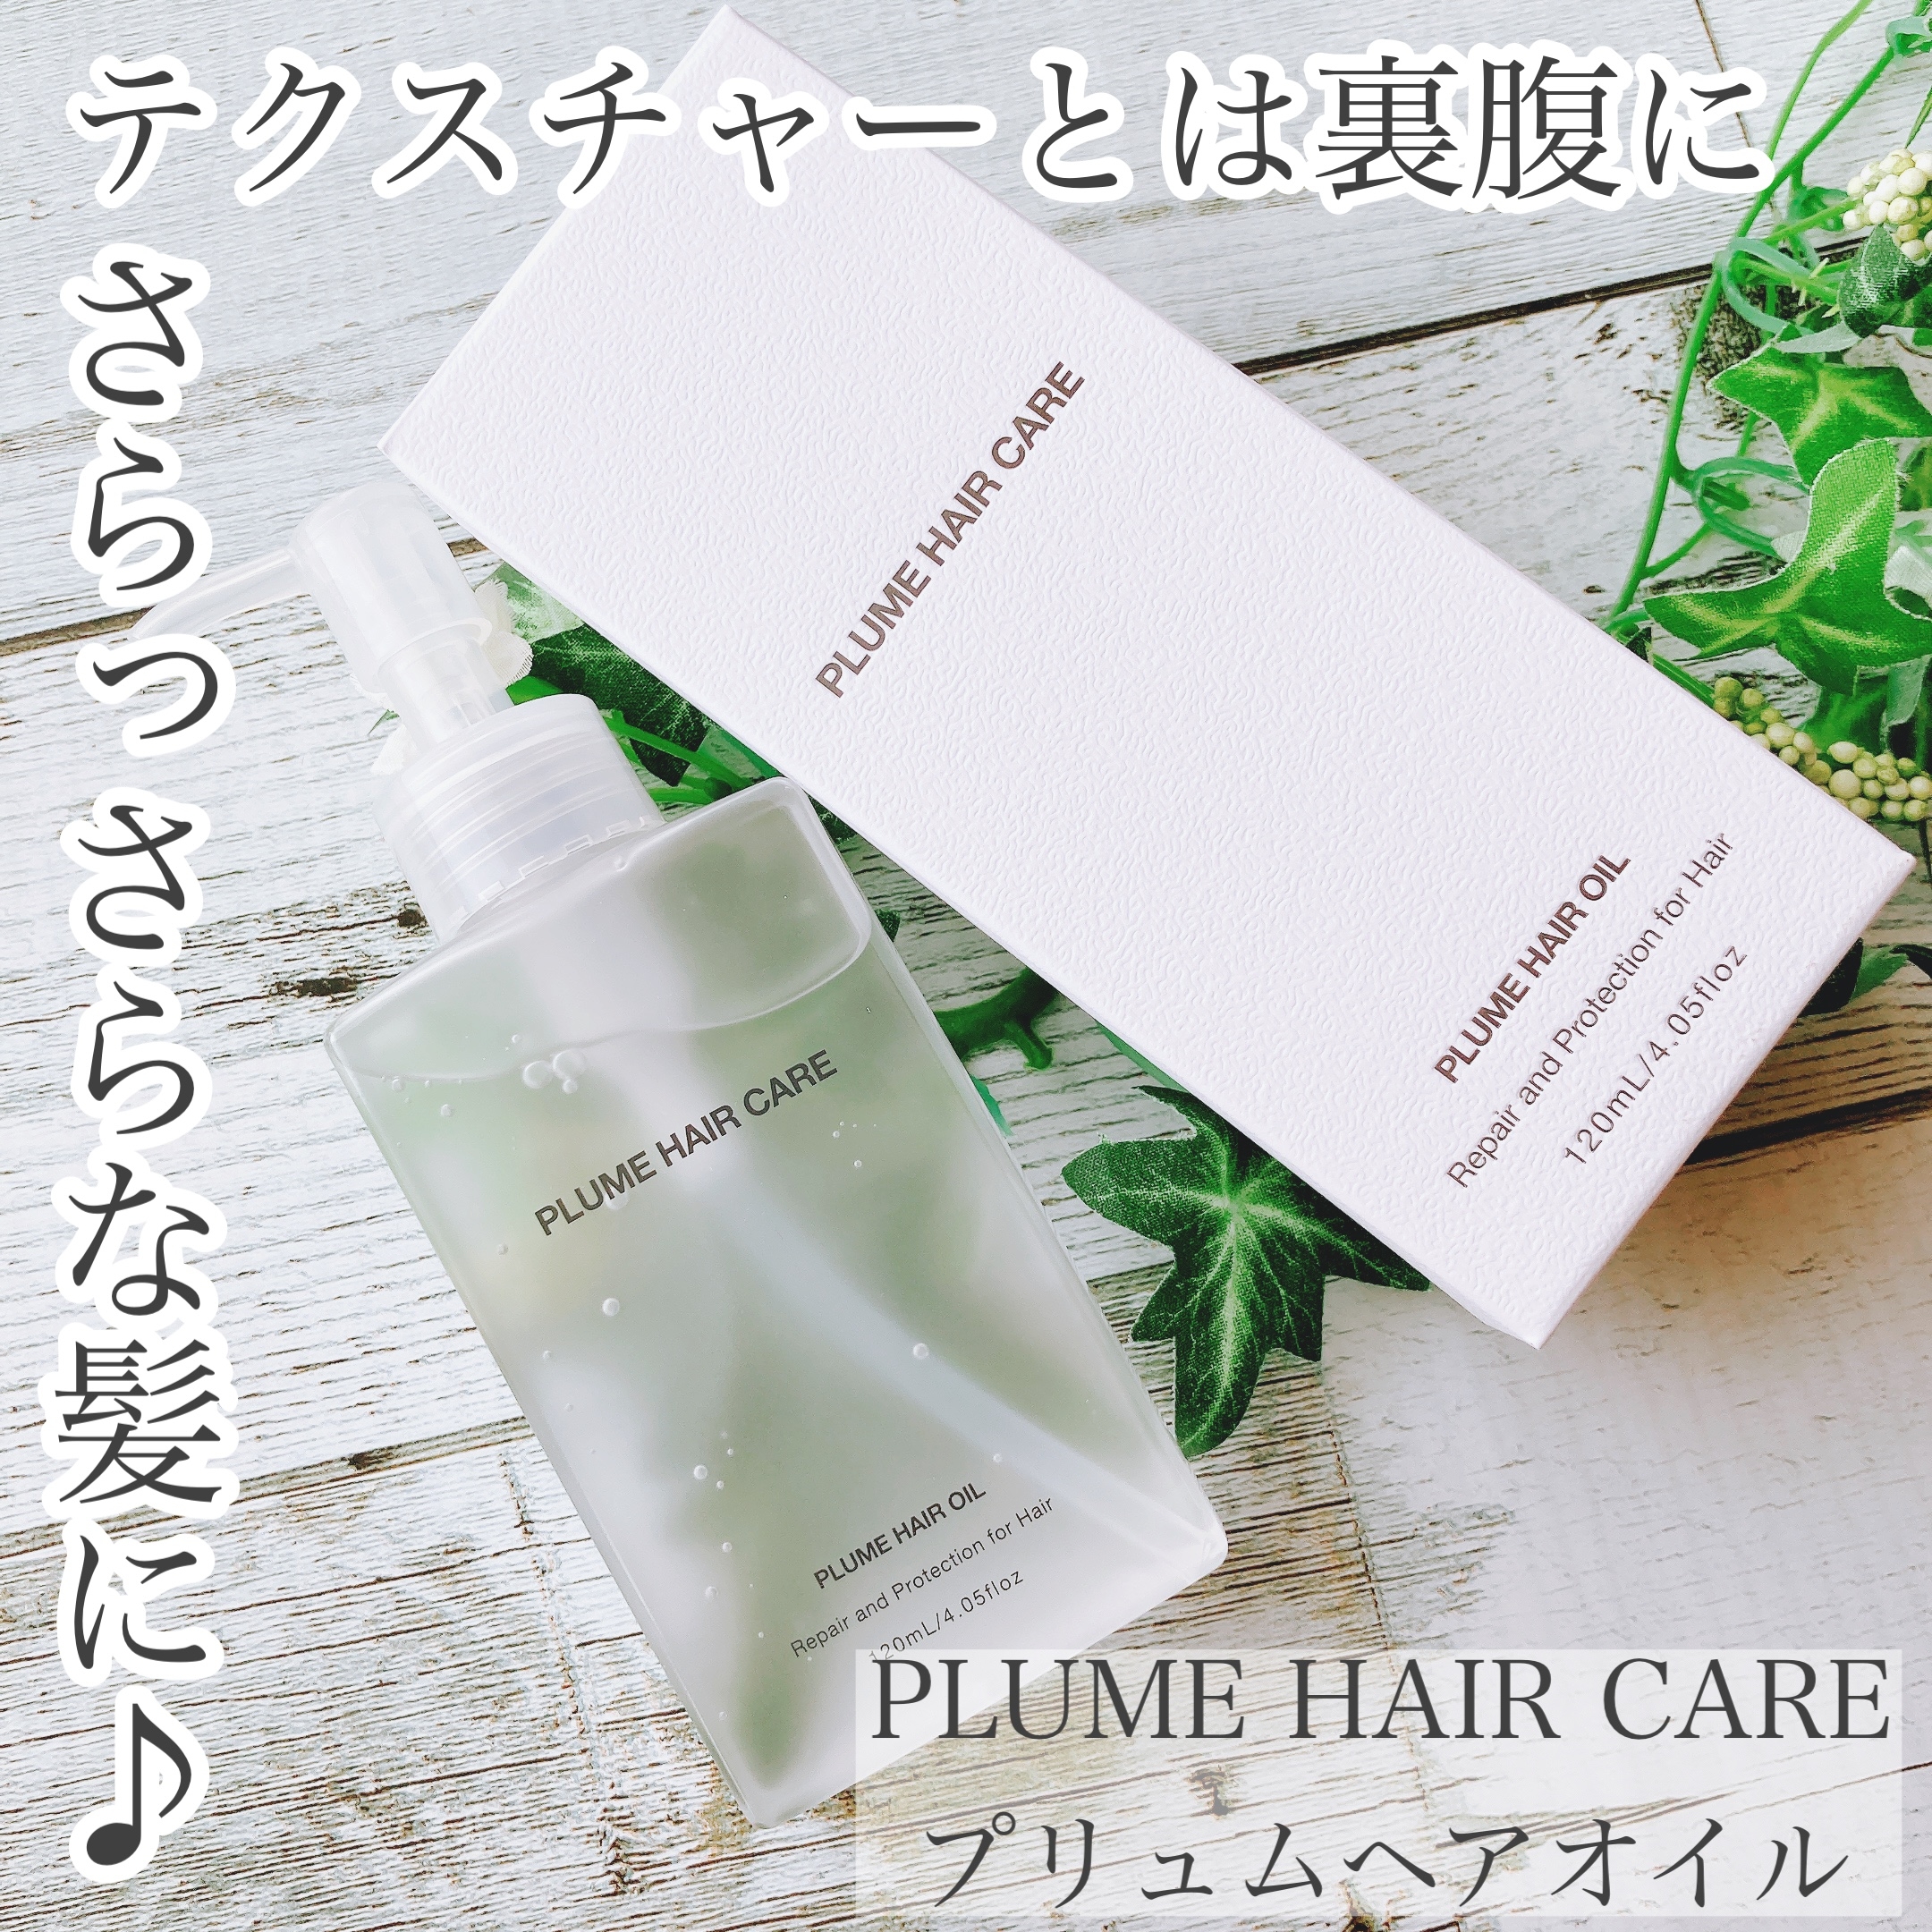 PLUME HAIR CARE(プリュムヘアケア) ヘアオイルの良い点・メリットに関するおかんさんの口コミ画像1